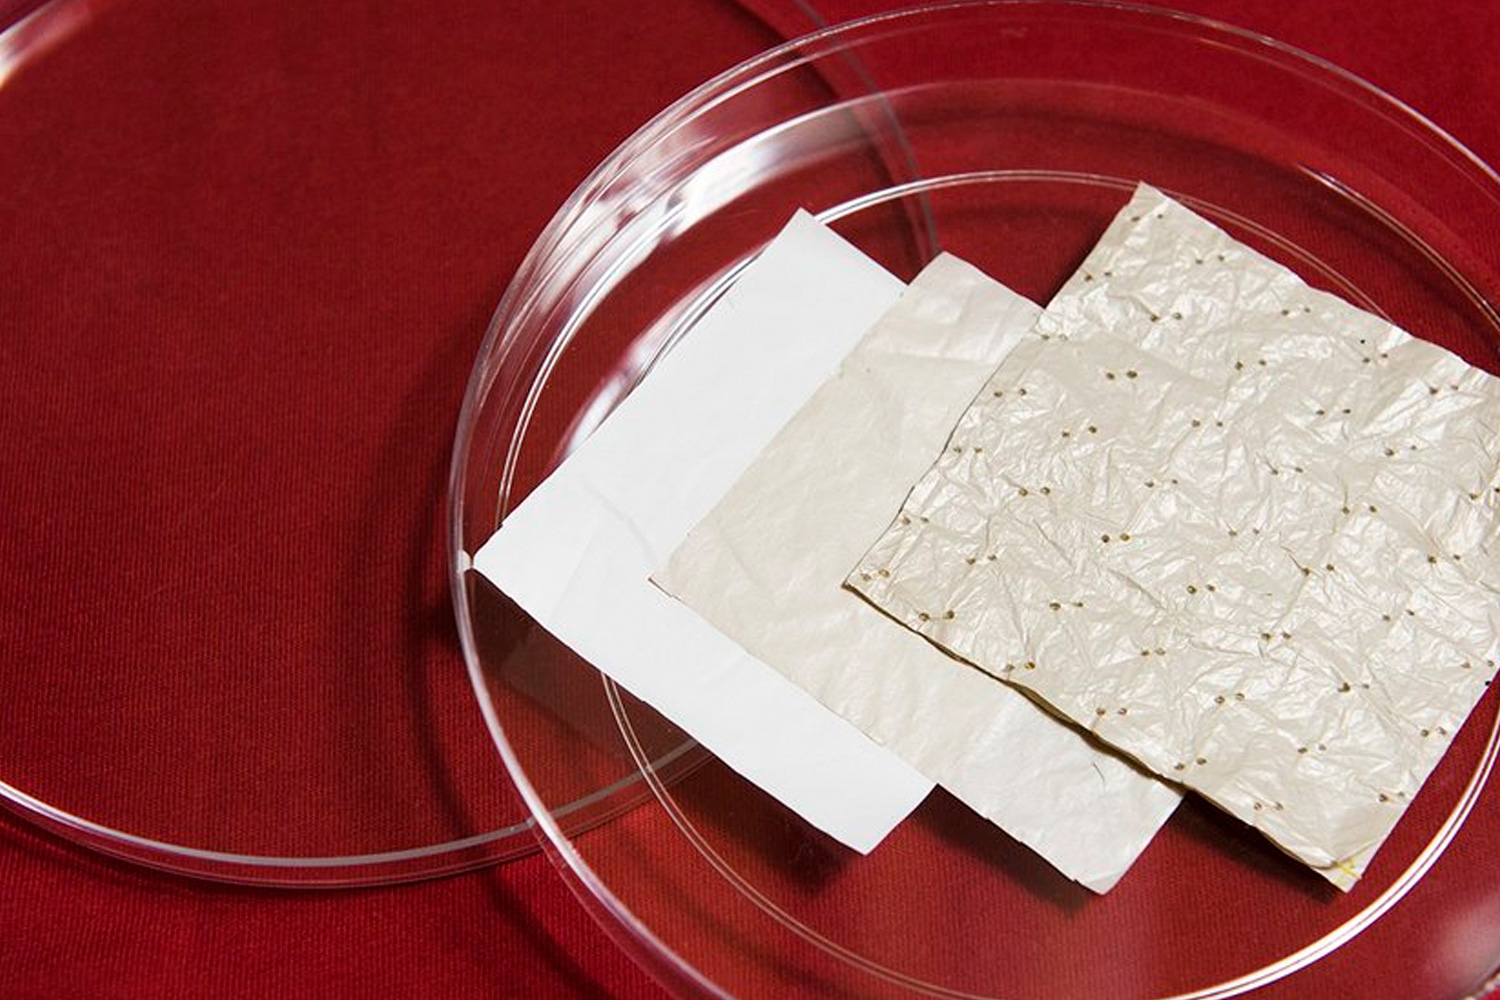 El nuevo tejido de plástico capaz de refrescar el cuerpo que revolucionará la industria textil